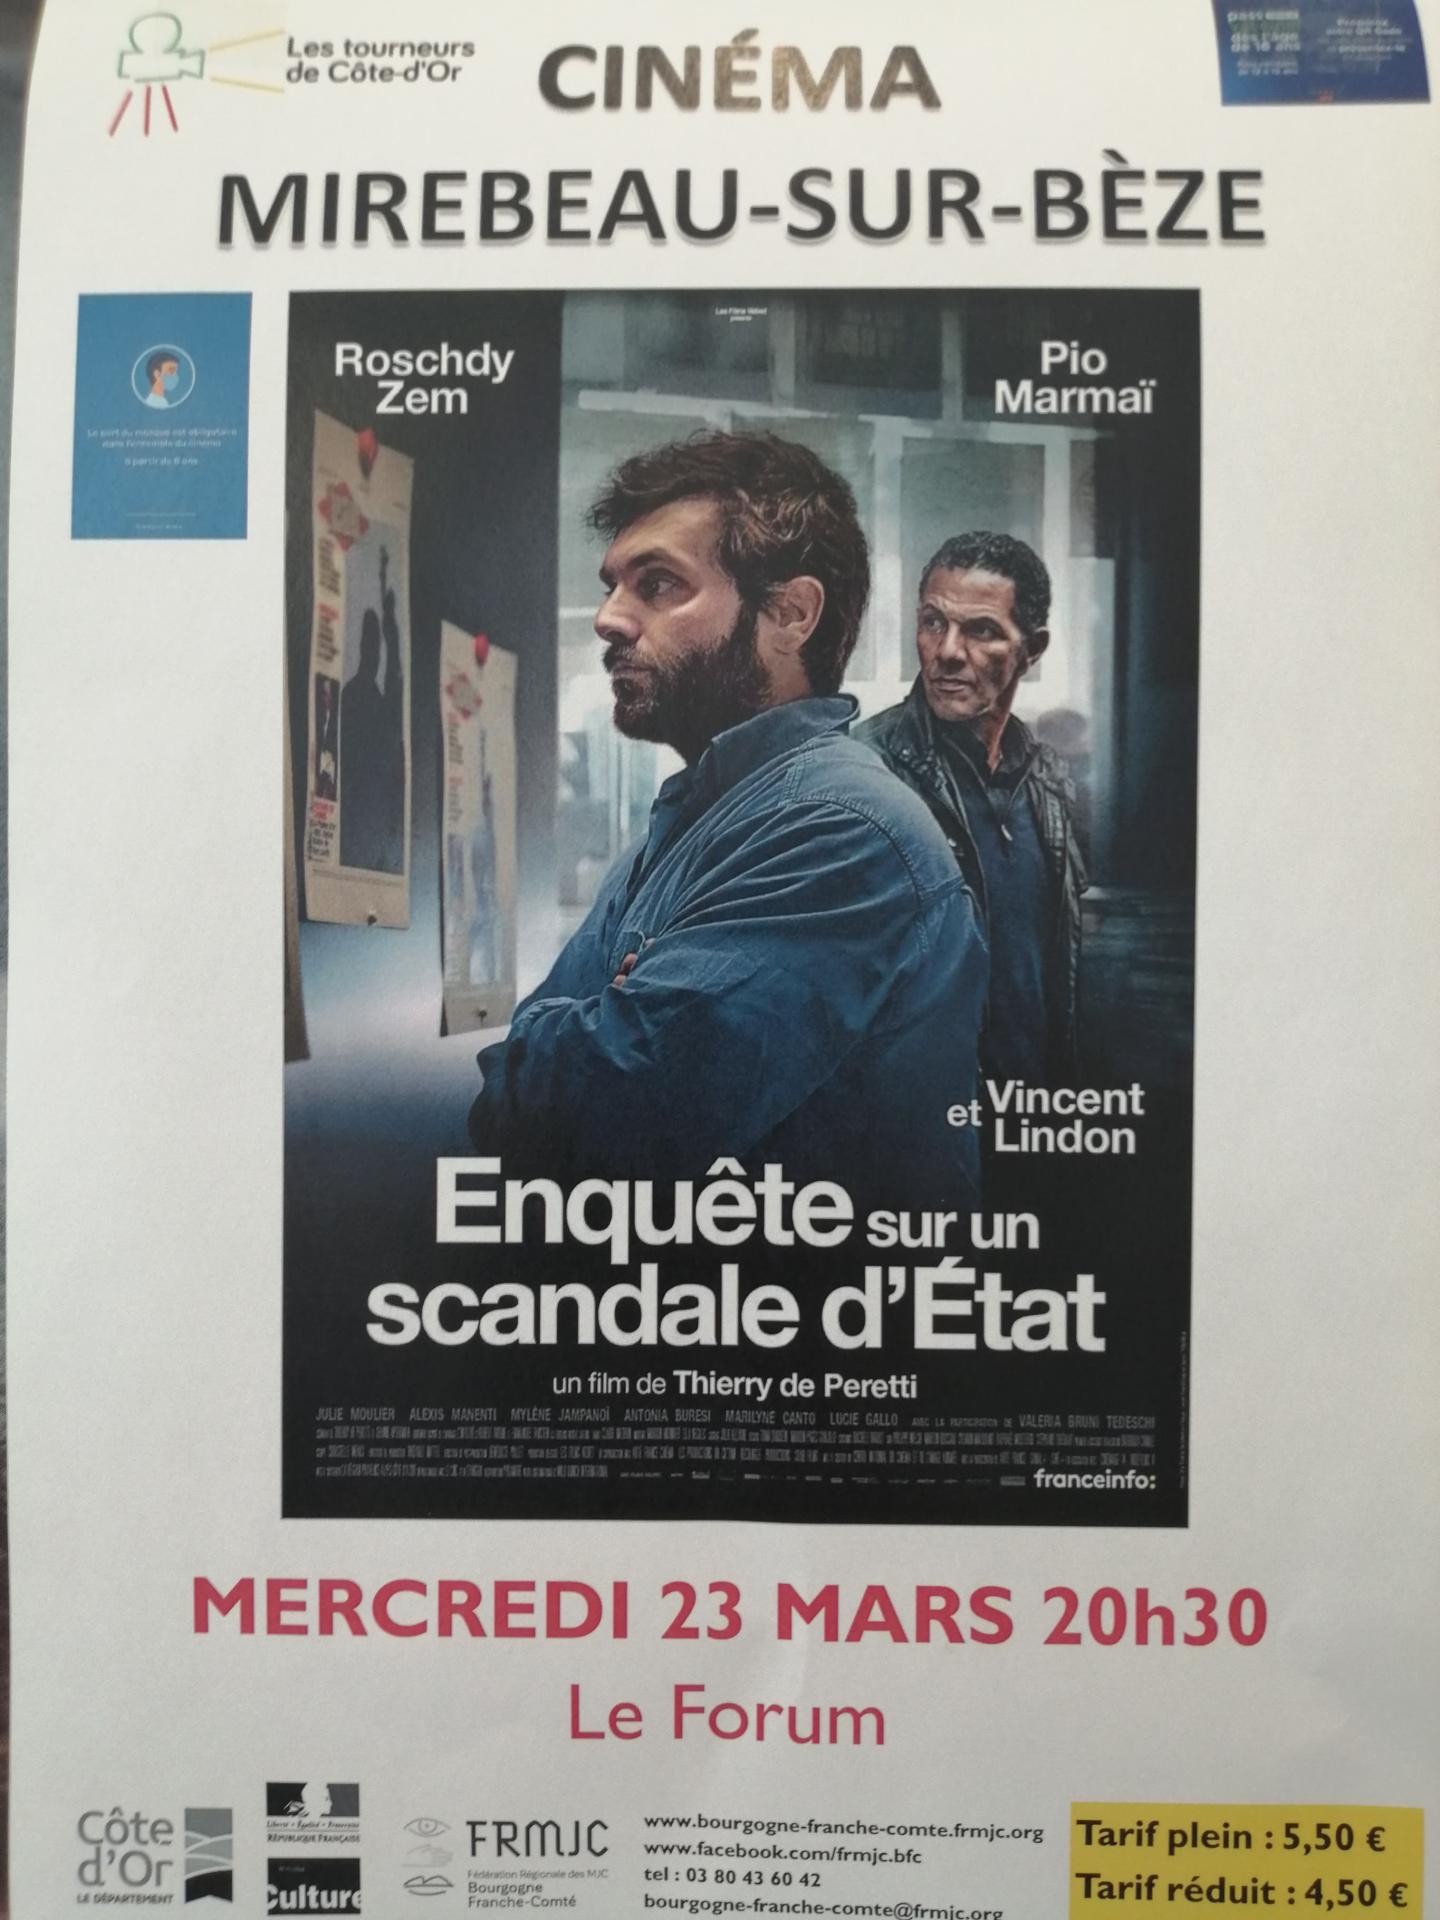 MERCREDI 23 MARS 2022 à 20h30  Cinéma - Enquête sur un scandale d'Etat.